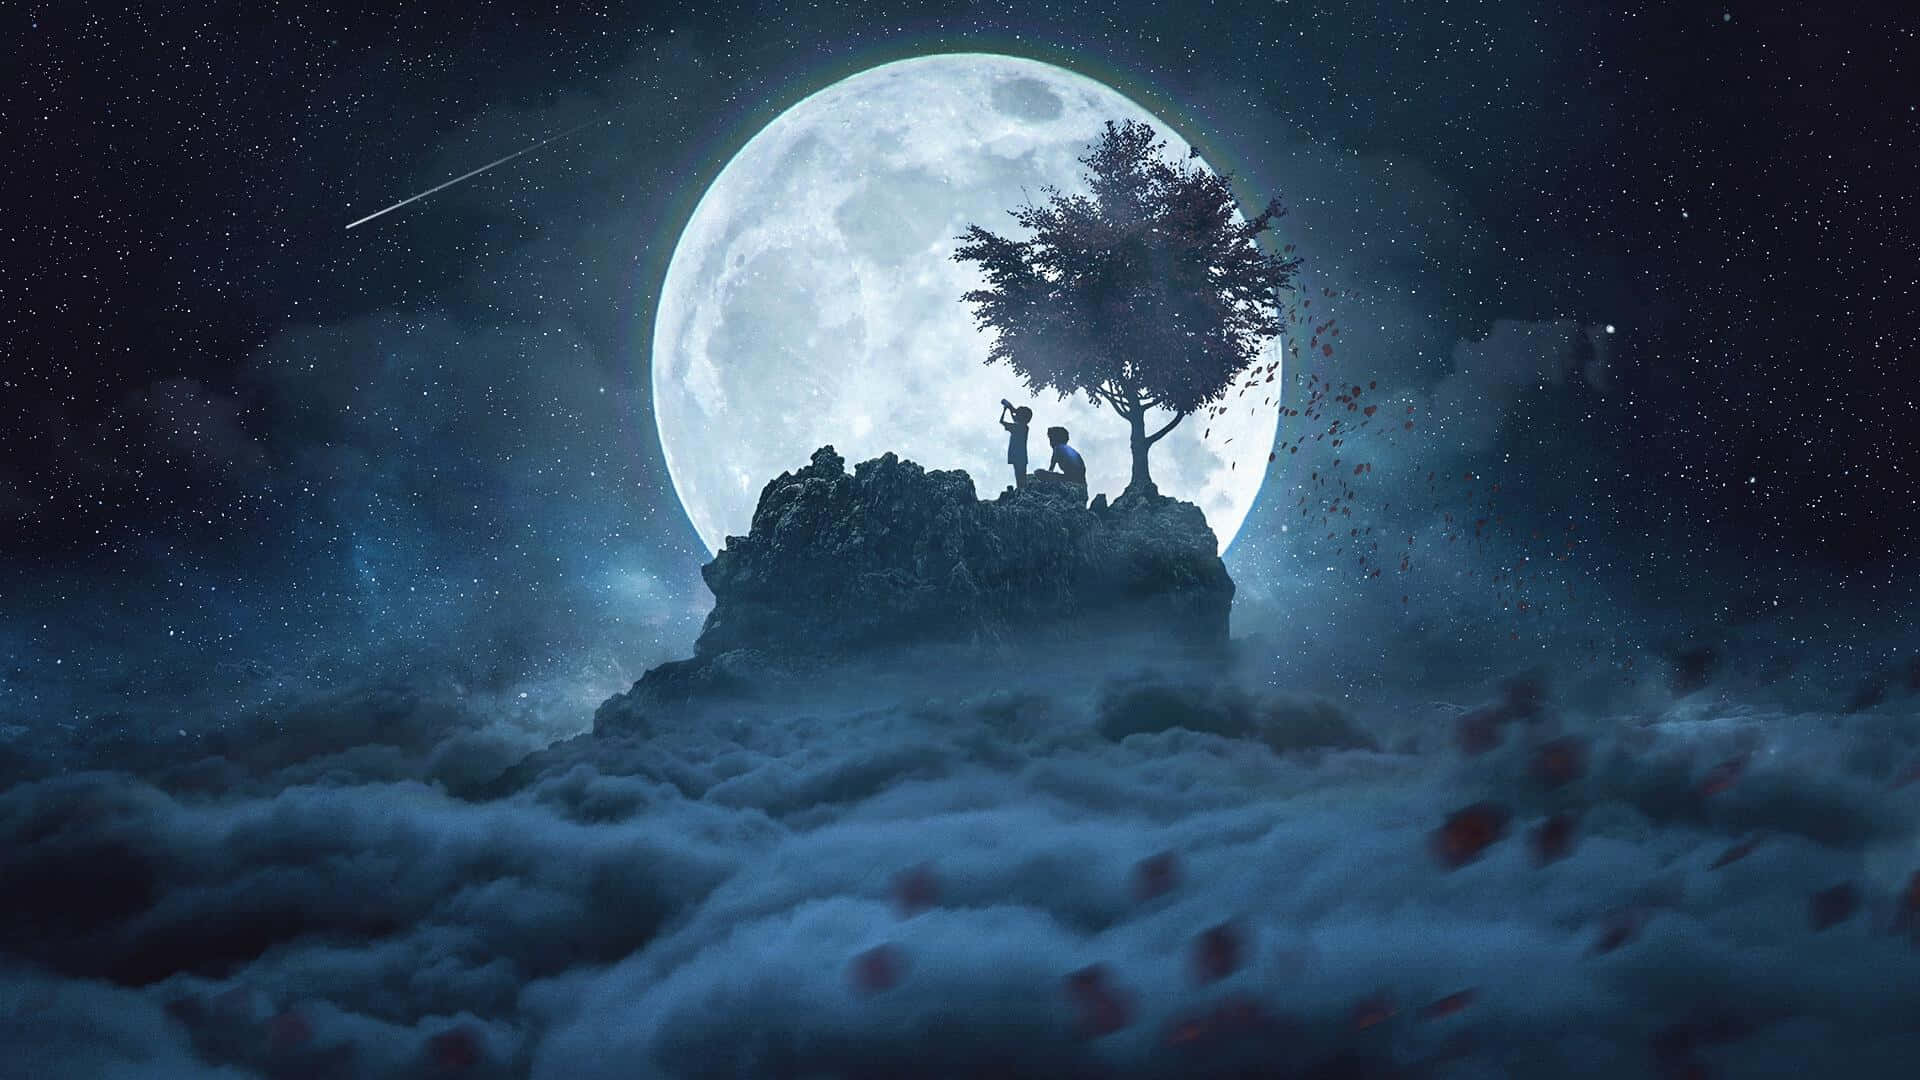 Fotodi Un'immagine Del Paesaggio Notturno Con La Luna E La Sagoma Di Una Persona